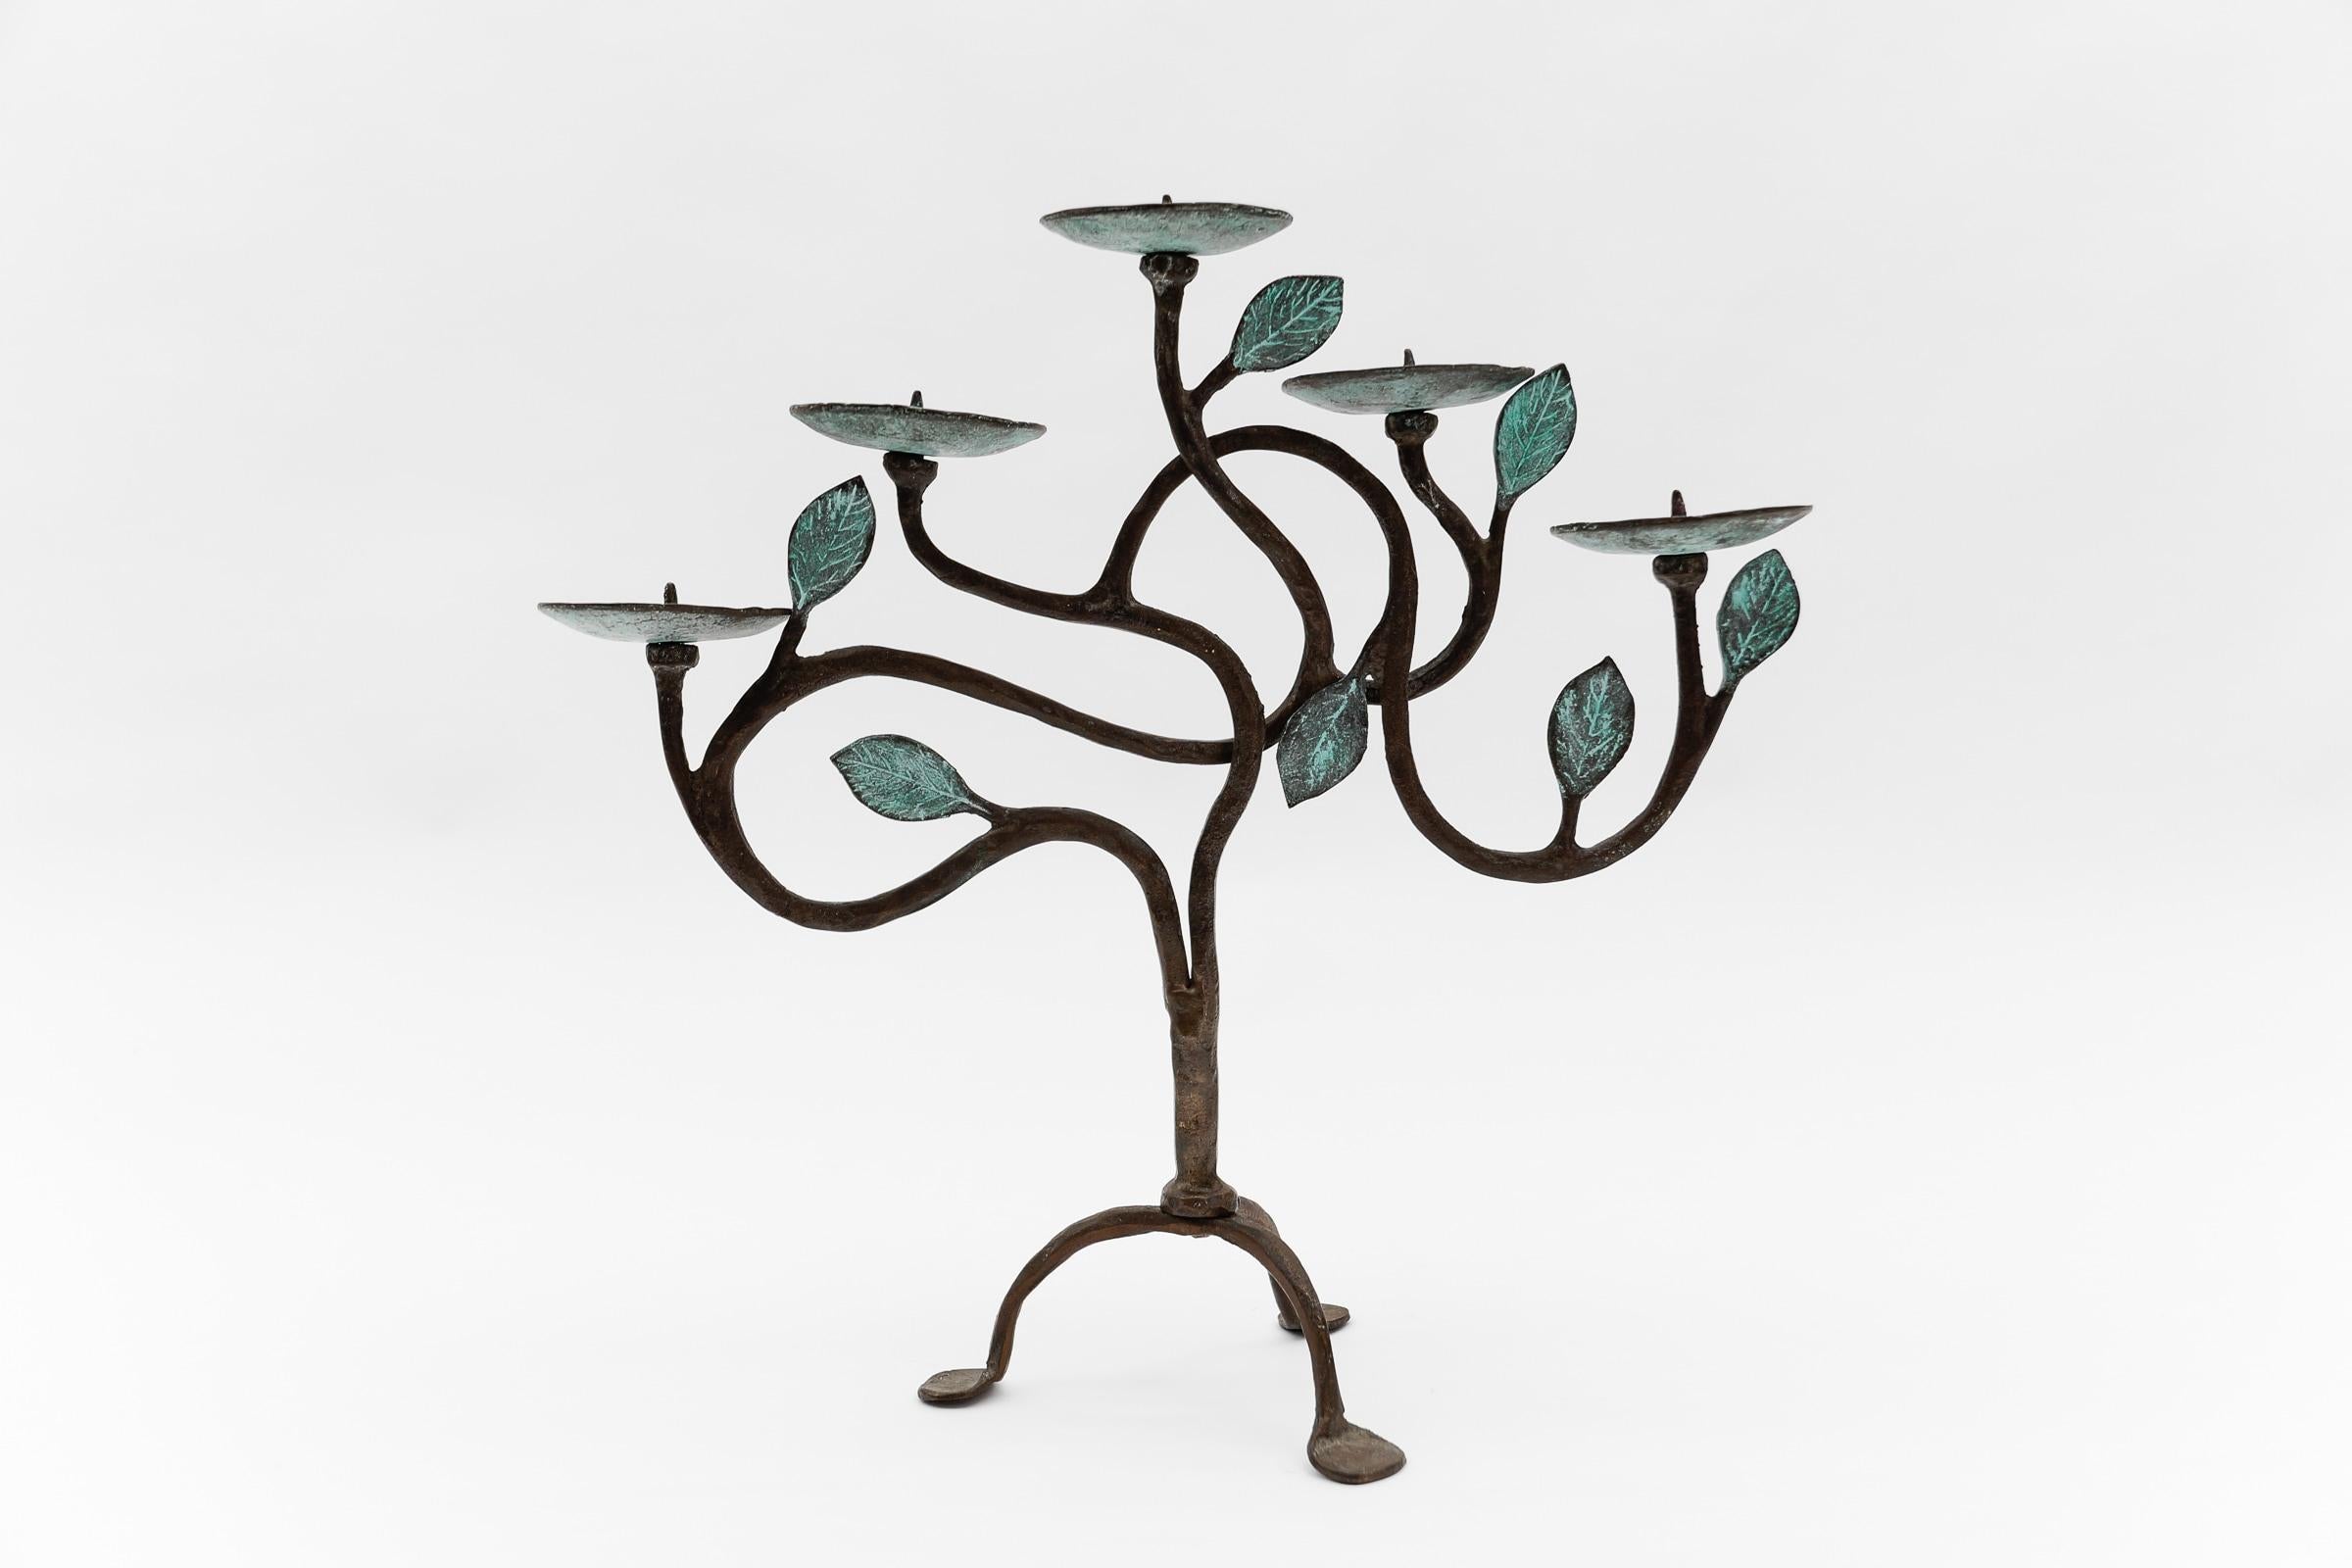 Handgeschmiedeter Kerzenhalter aus Bronze und Messing mit Baum des Lebens-Skulptur-Design, 1960er Jahre 

Ein wunderschöner, perfekt geformter Lebensbaum aus Bronze. Kunstvolle Handwerkskunst.

Wir haben einen passenden Wandkerzenhalter aus der